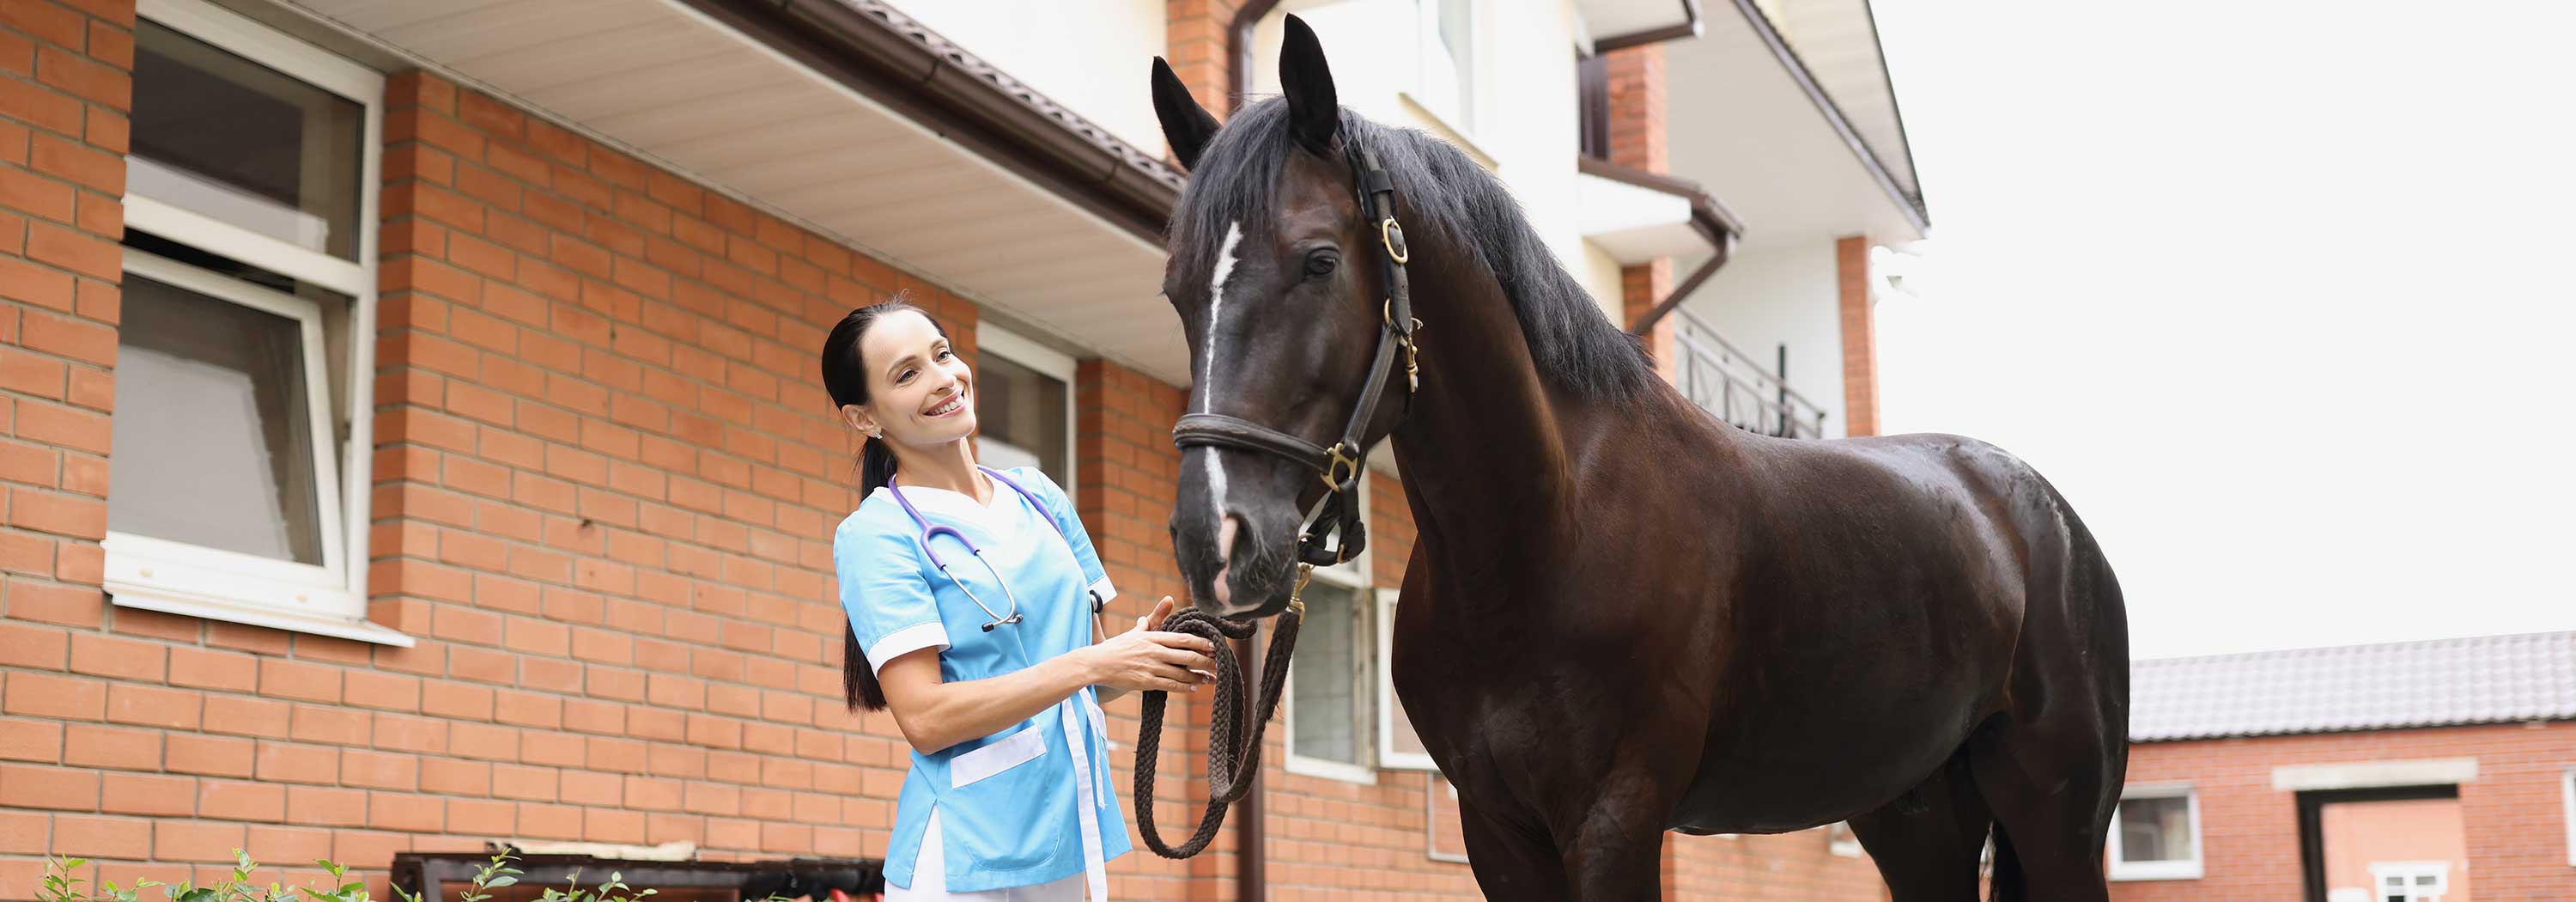 Tierarzt Pferde Angebot und Service